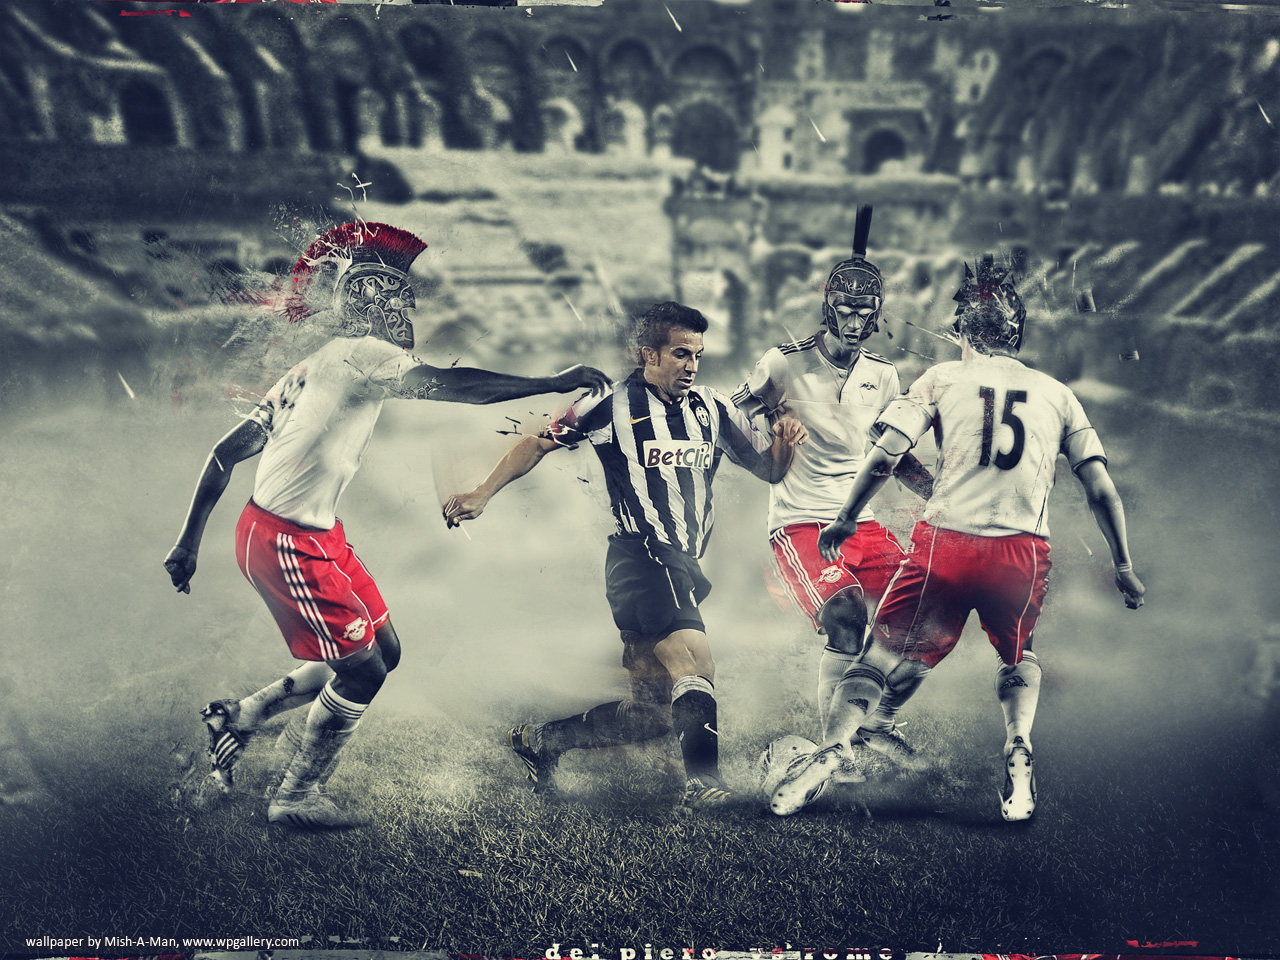 Del Piero vs Rome for 1280 x 960 resolution